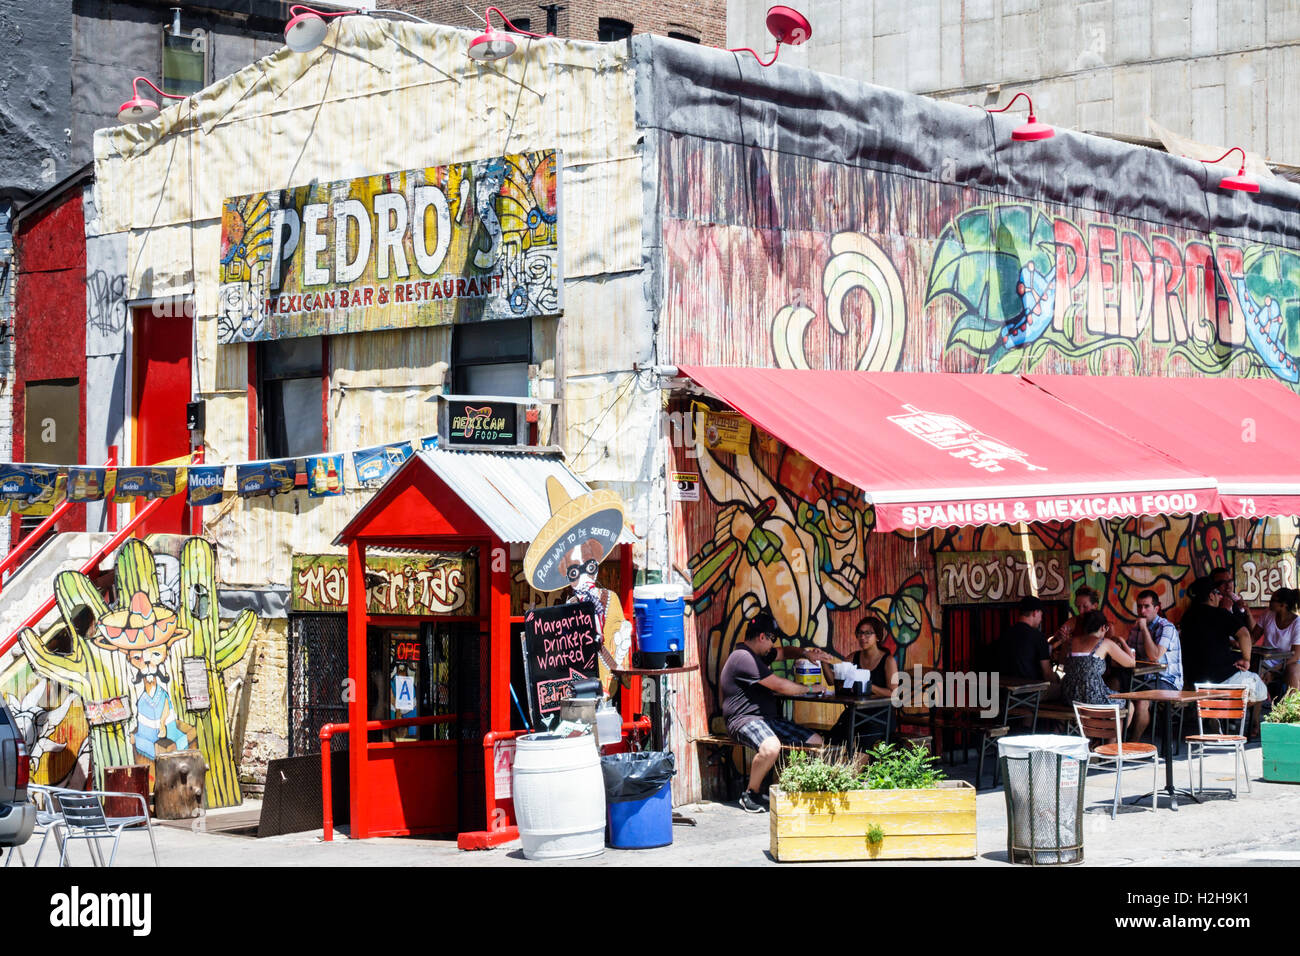 New York City, NY NYC Brooklyn, Dumbo, Front Street, Pedro's Mexican Bar & Restaurant, extérieur, graffiti art, extérieur, repas, panneau, découpe du bois, Banque D'Images